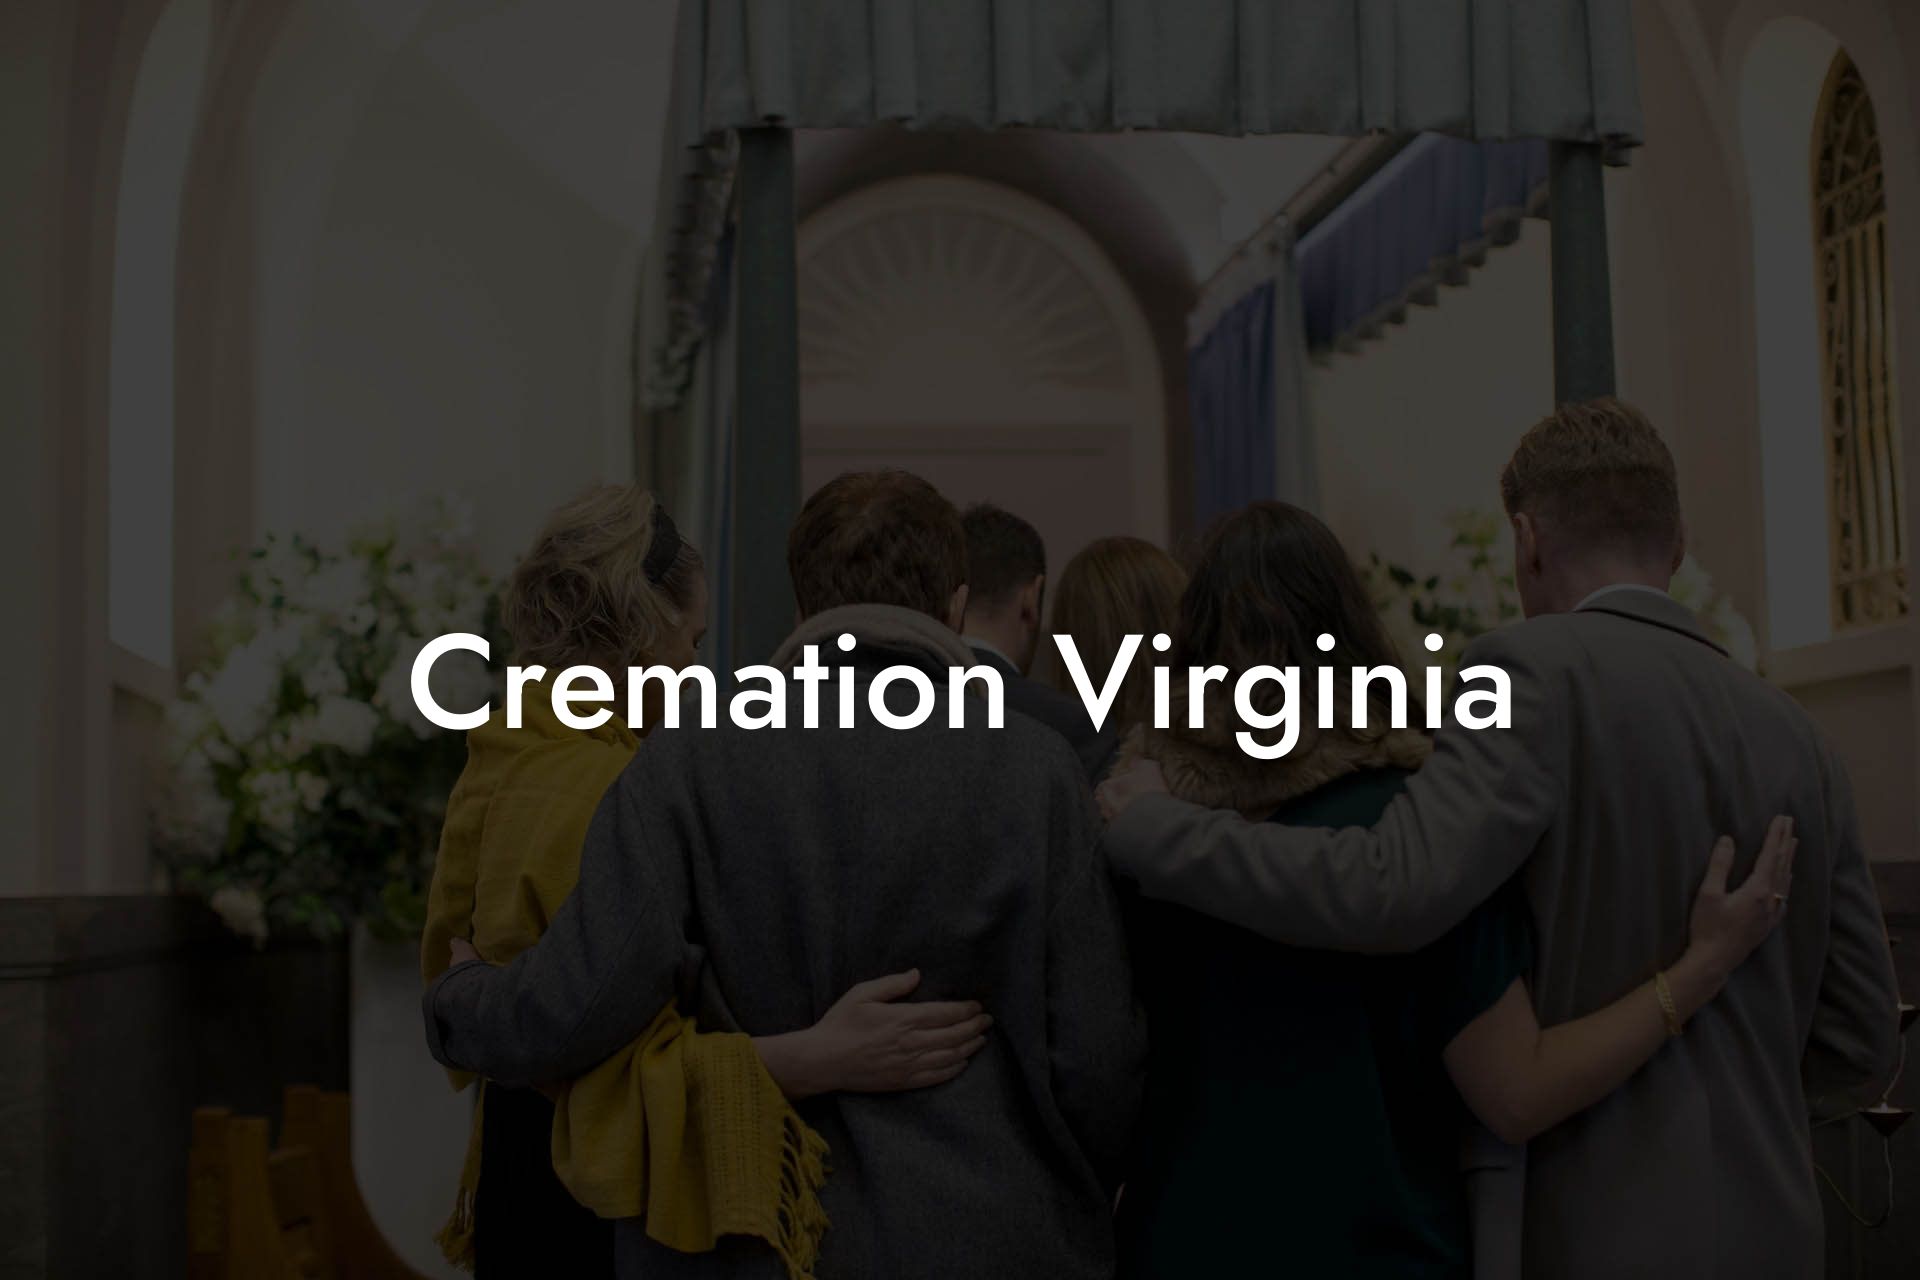 Cremation Virginia